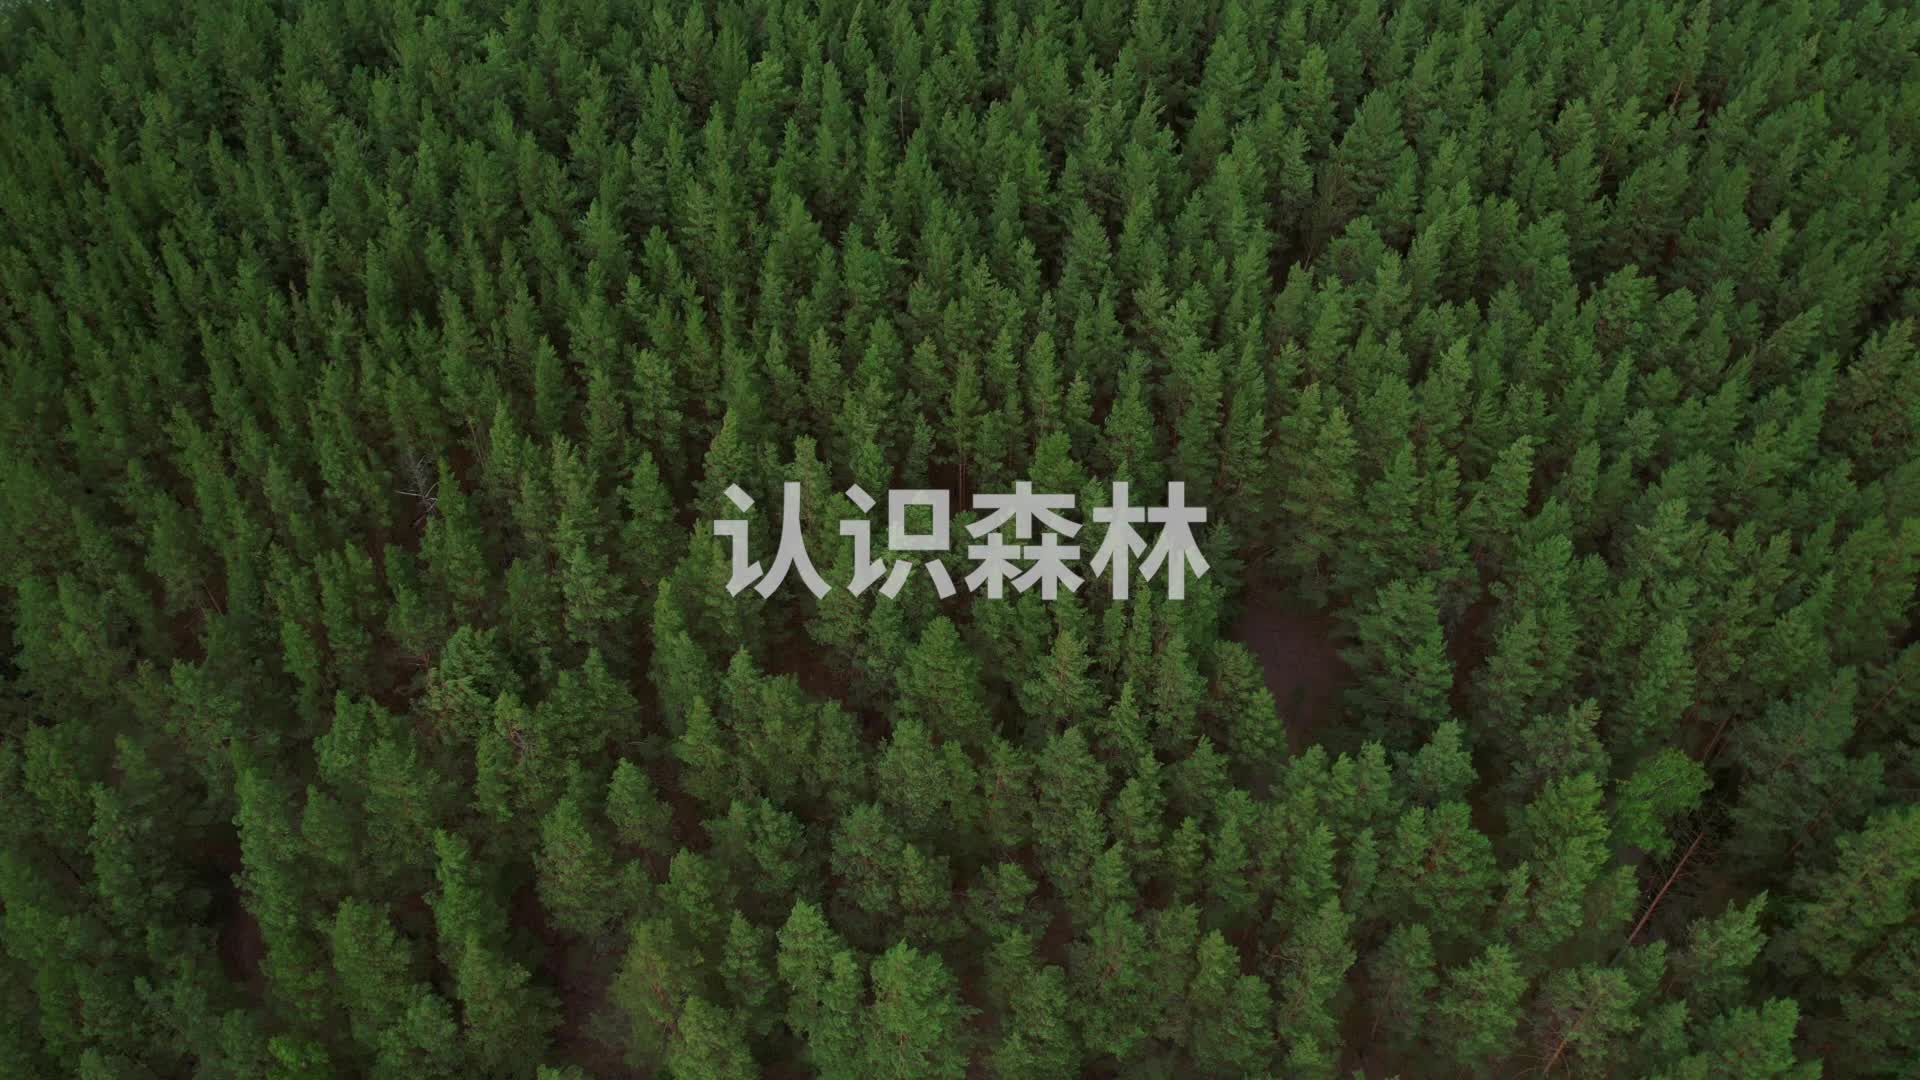 【科学家讲座】 认识森林